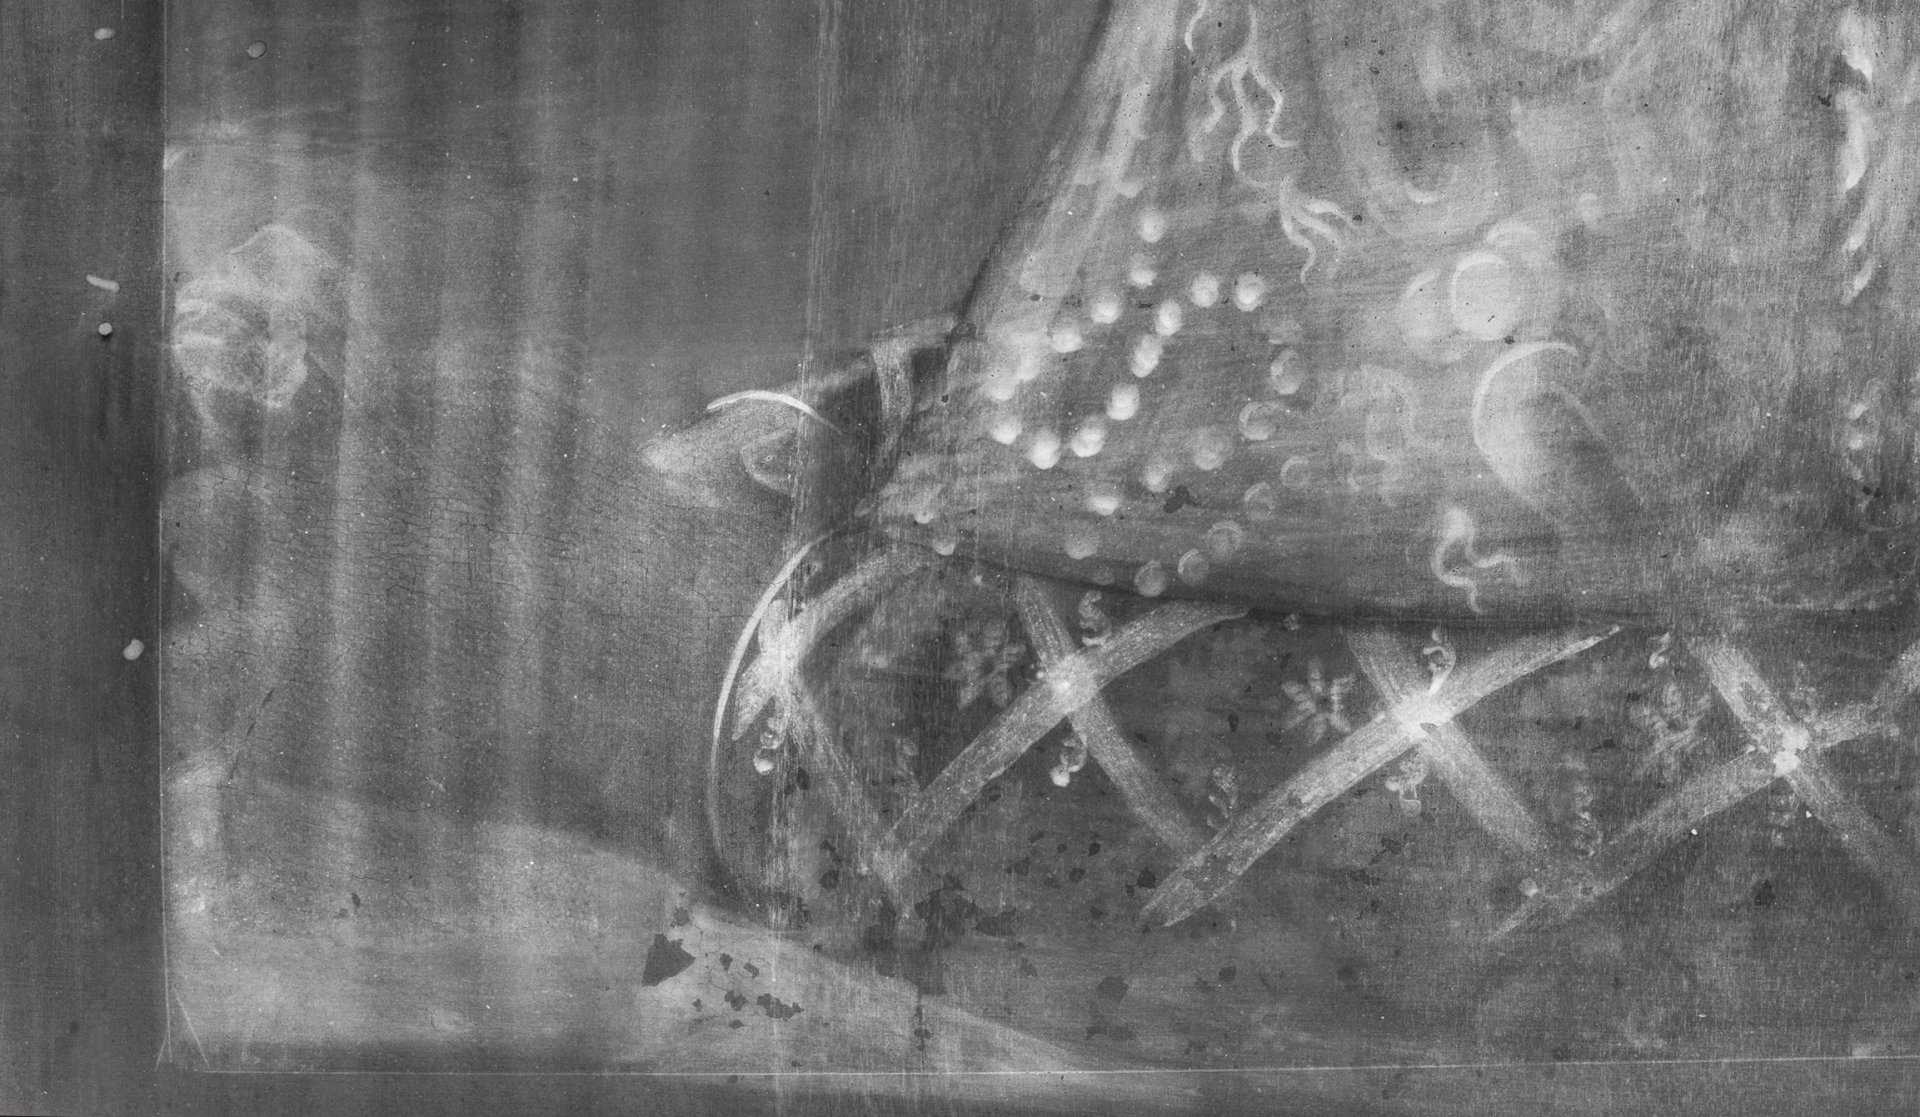 Detalle de las manos en radiografía de la obra Retrato de Giovanna Tornabuoni, de Ghirlandaio